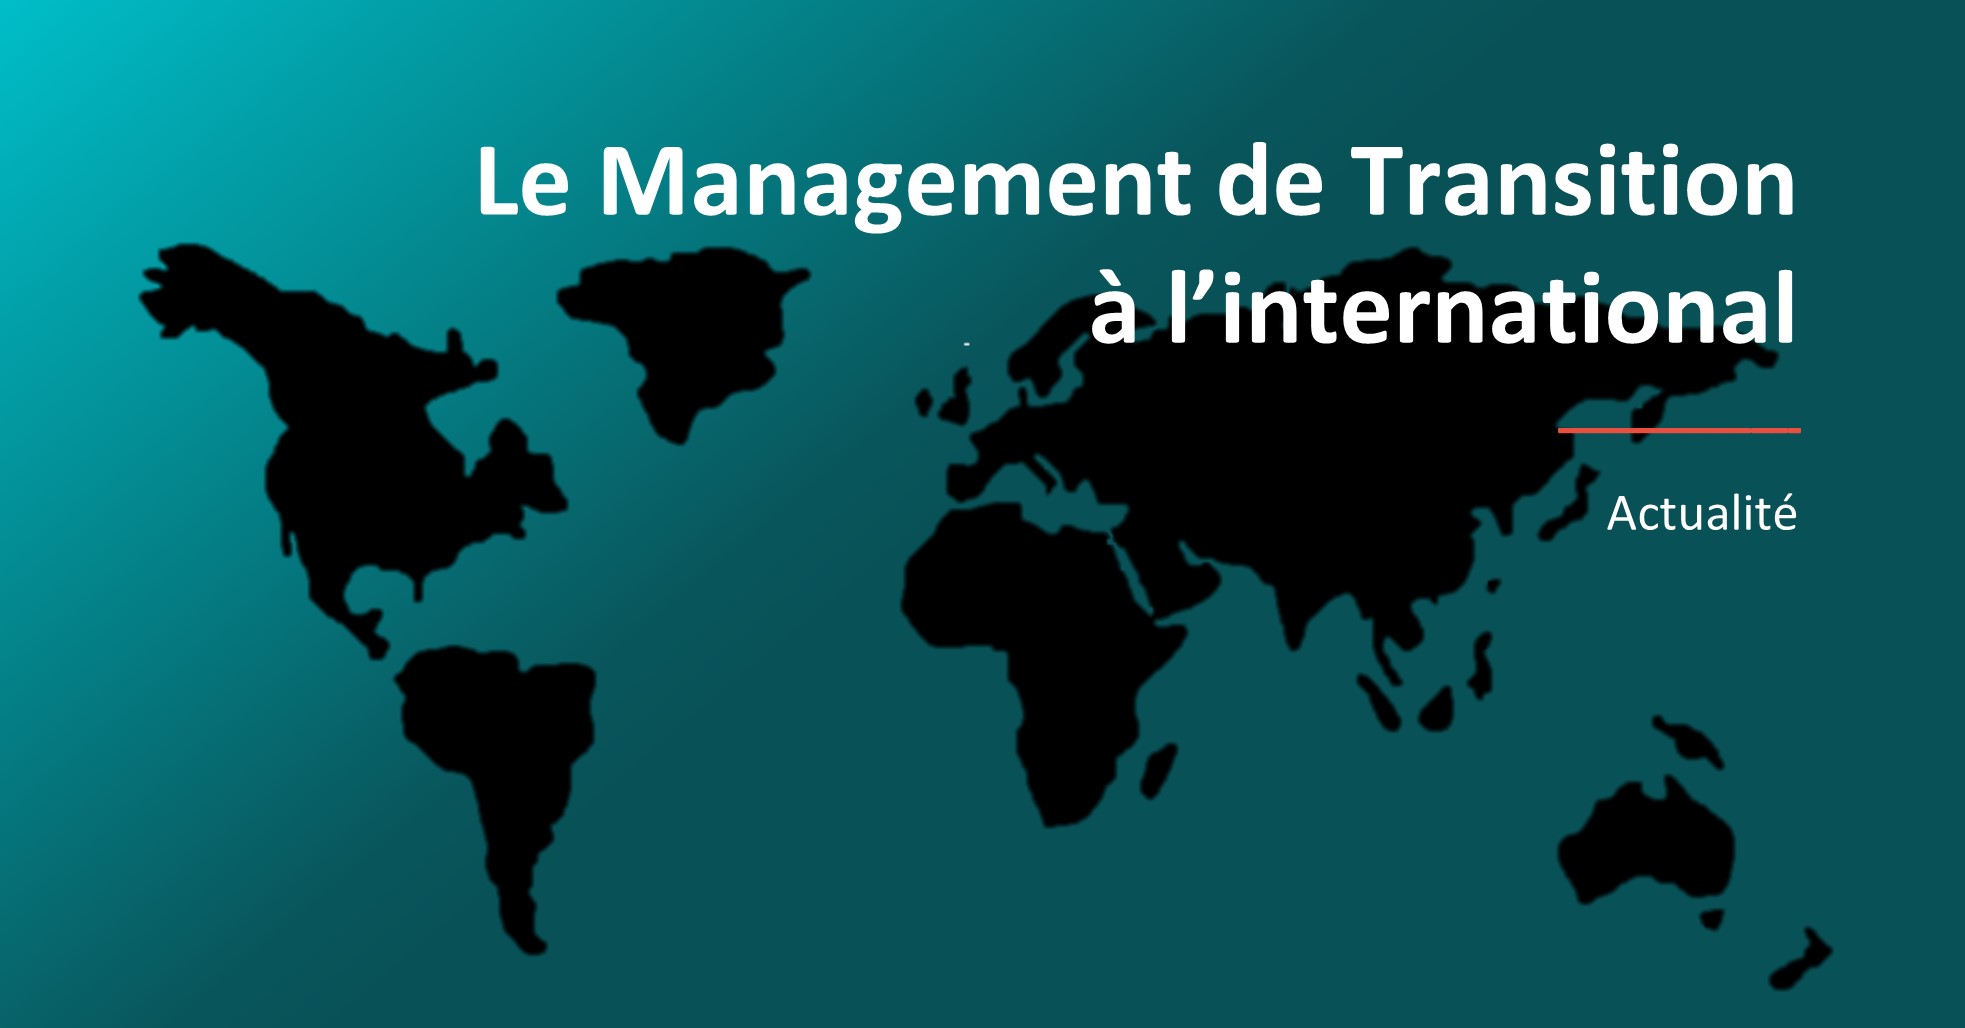 Le Management de Transition à l'international